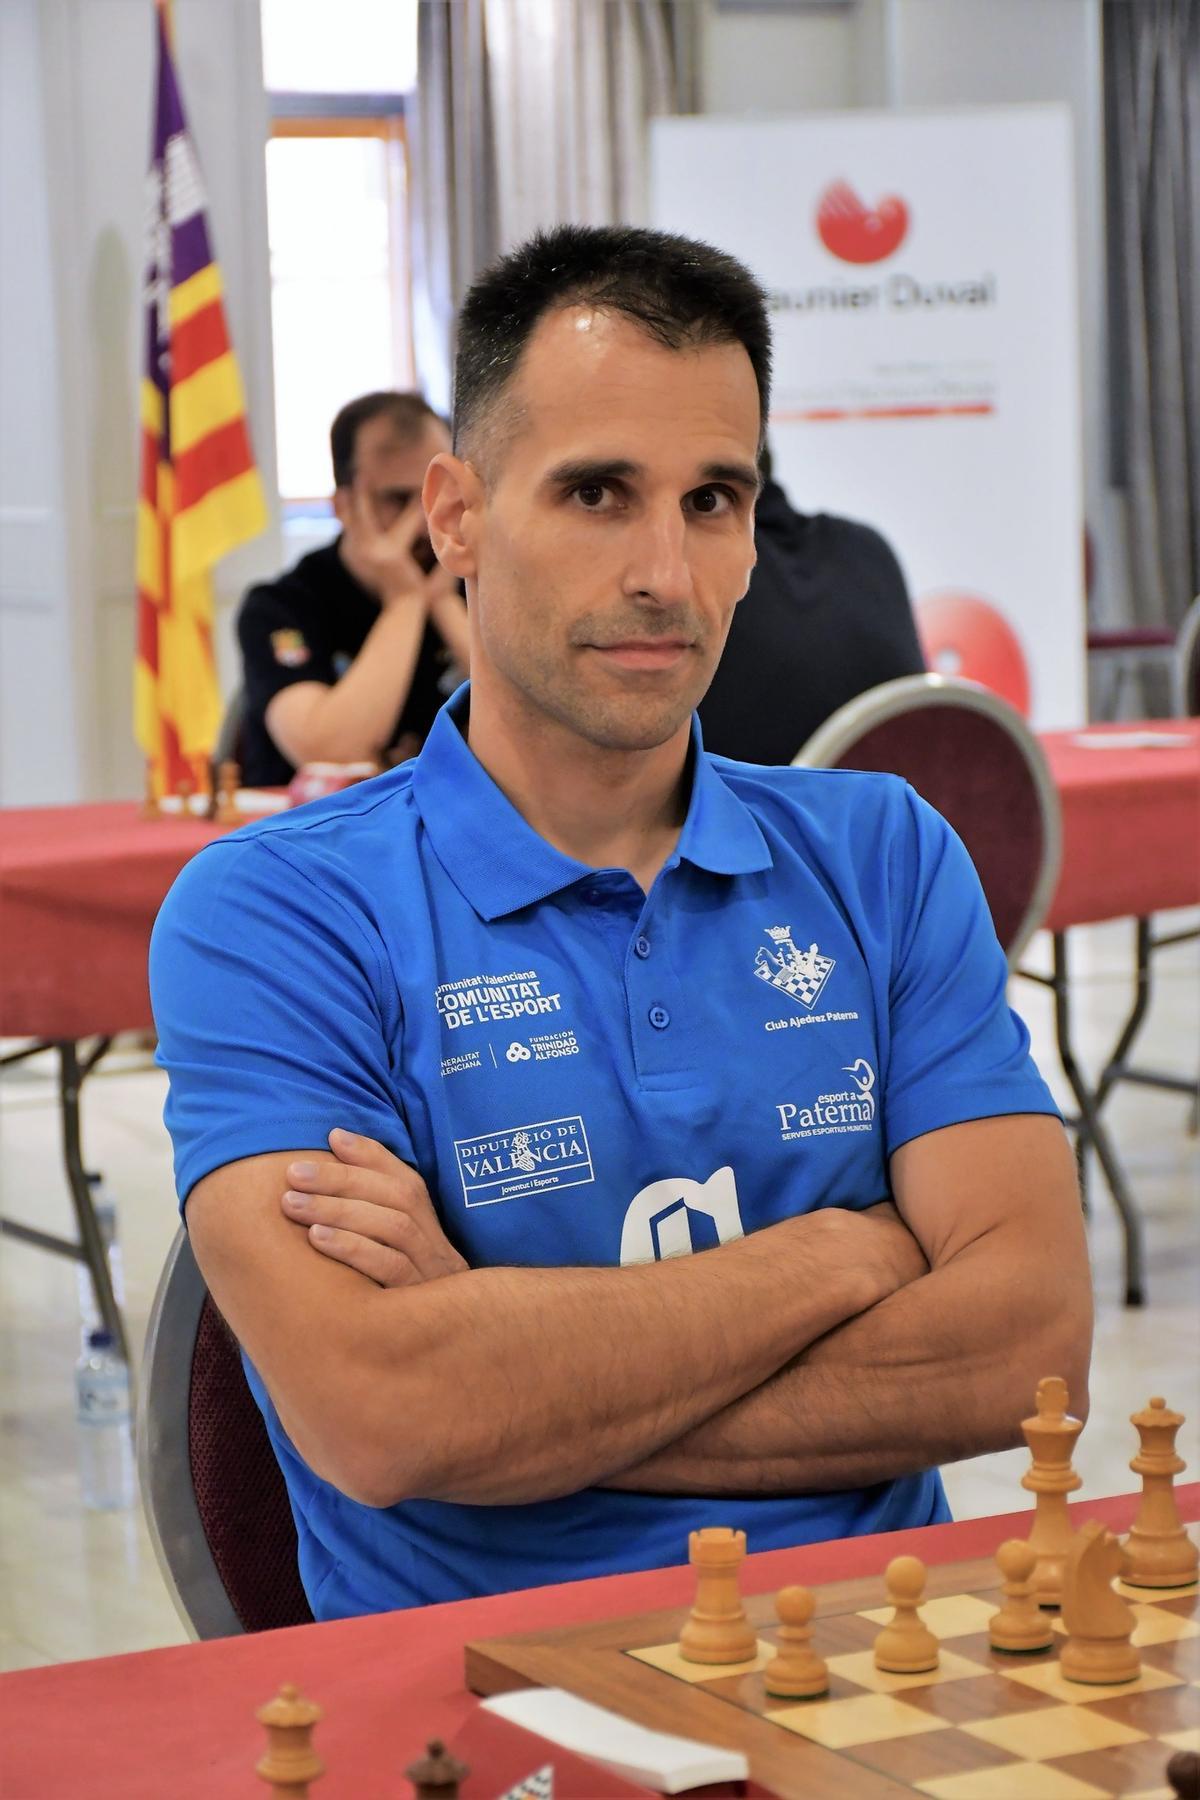 Nacido en los Estados Unidos el 5 de julio de 1976, Julen Arizmendi tiene en su poder el título de Gran Maestro (GM) desde el año 2004 y es una figura internacional en el panorama ajedrecístico mundial.